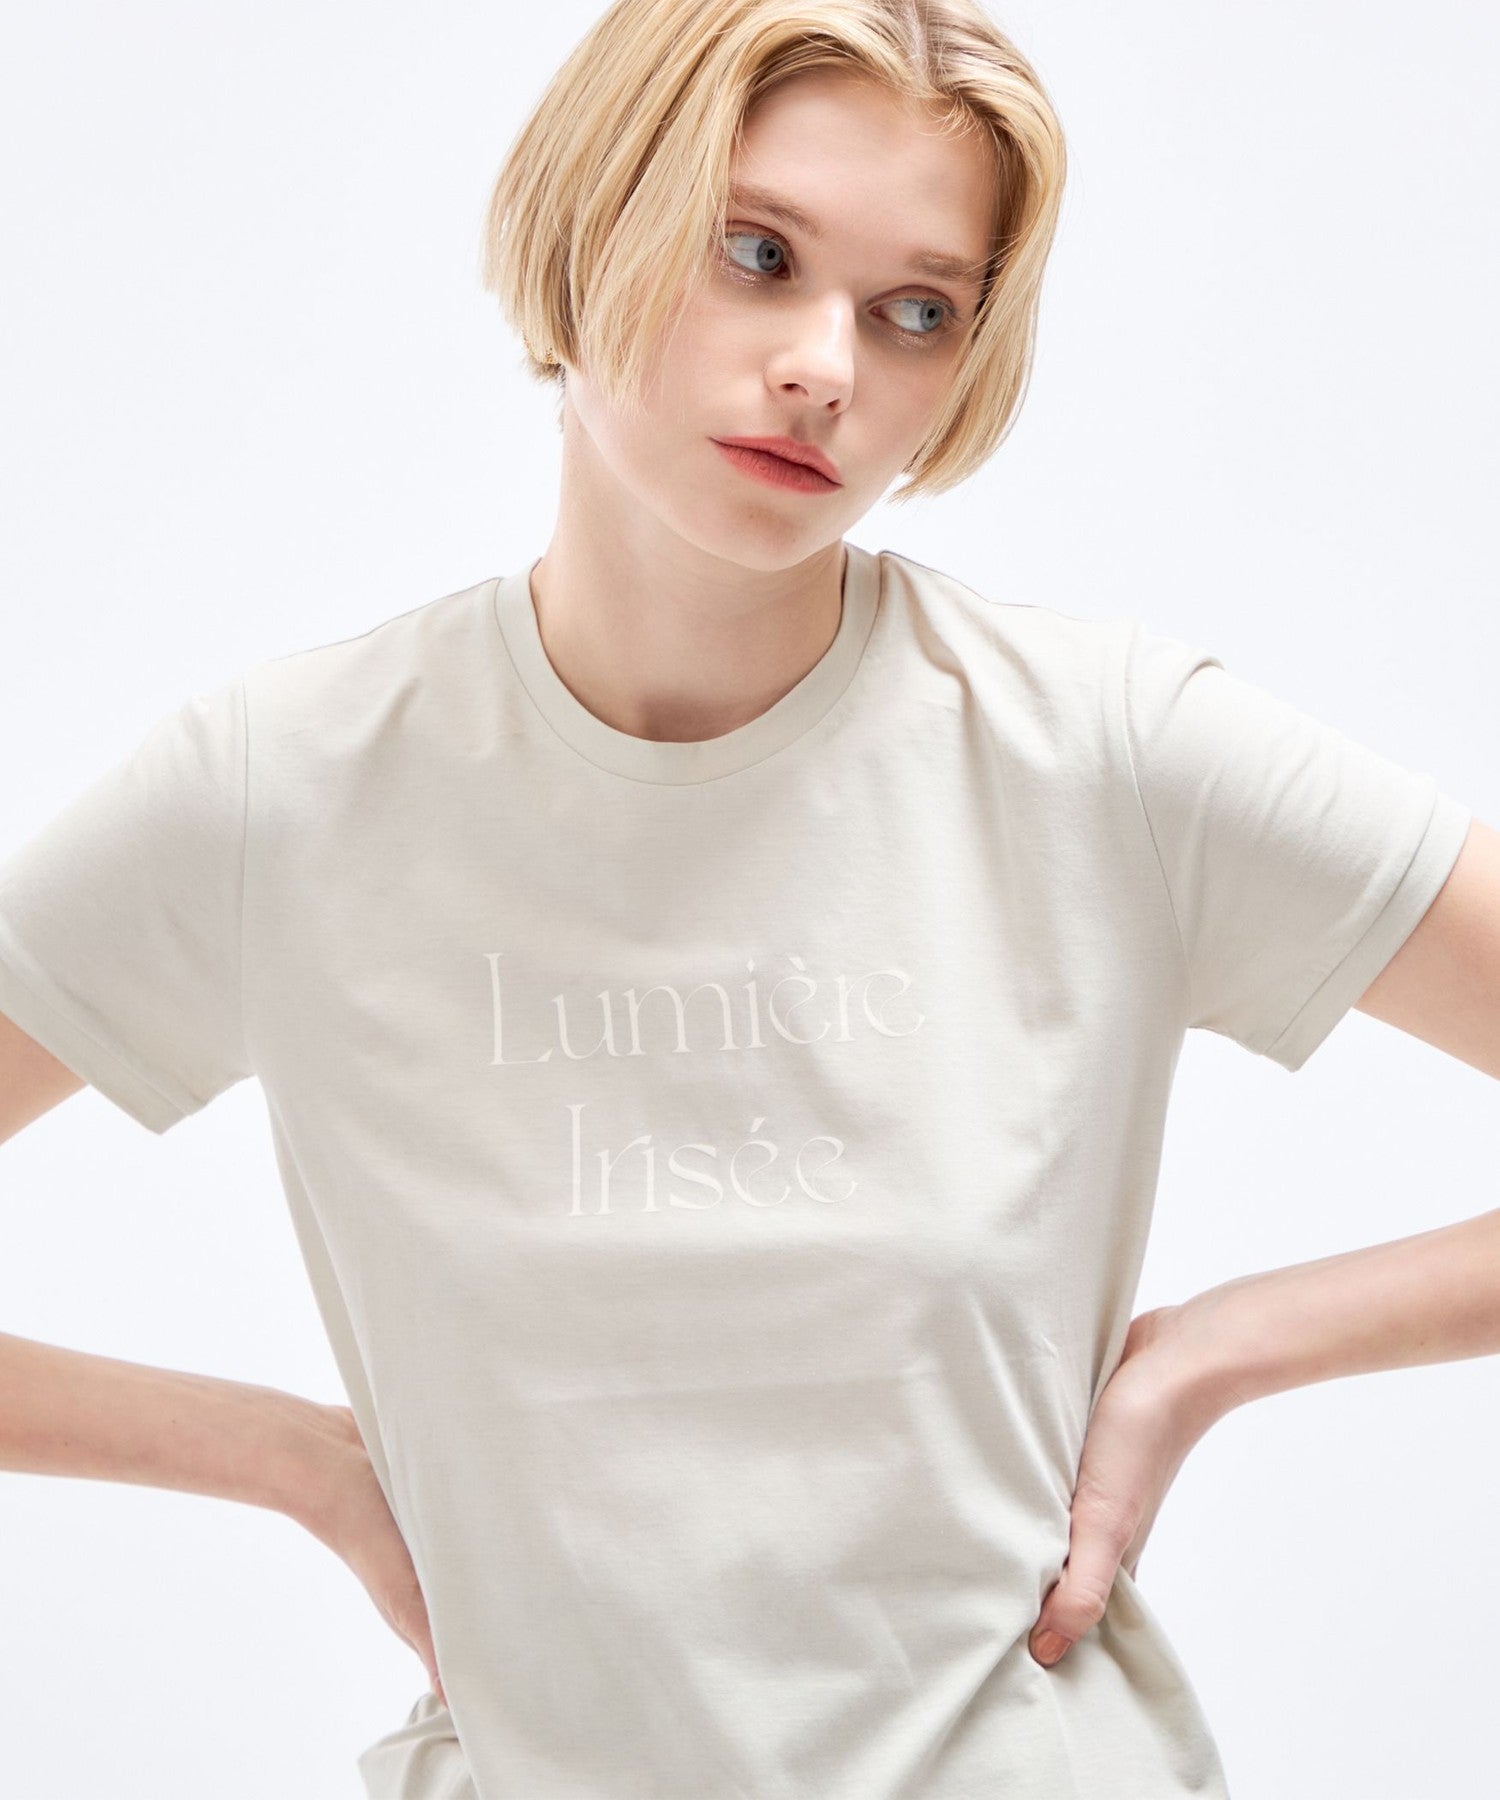 Lumiere Irise T衬衫